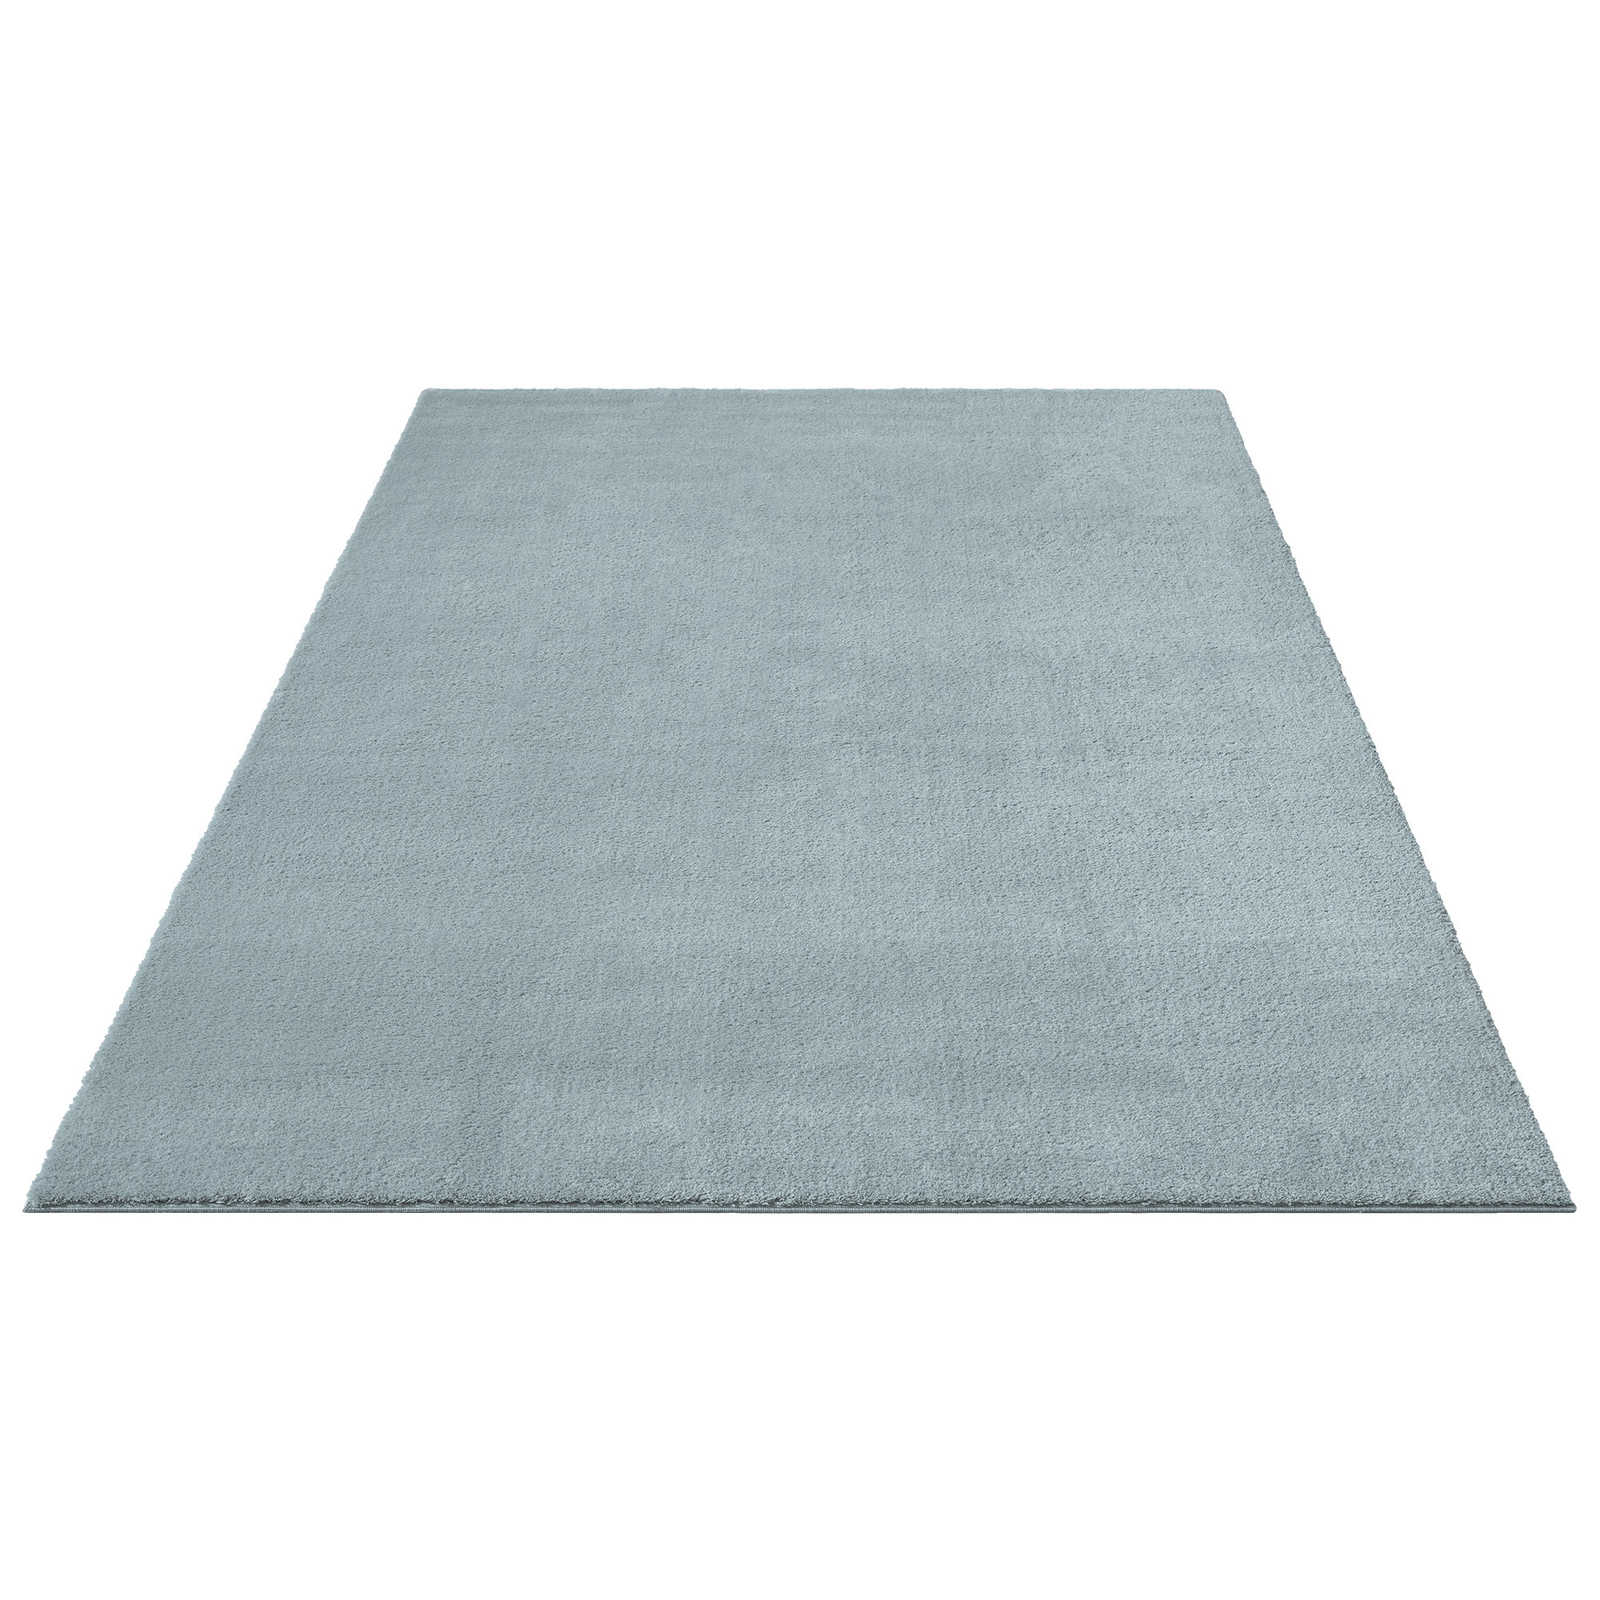 Fluffy high pile carpet in blue - 340 x 240 cm
